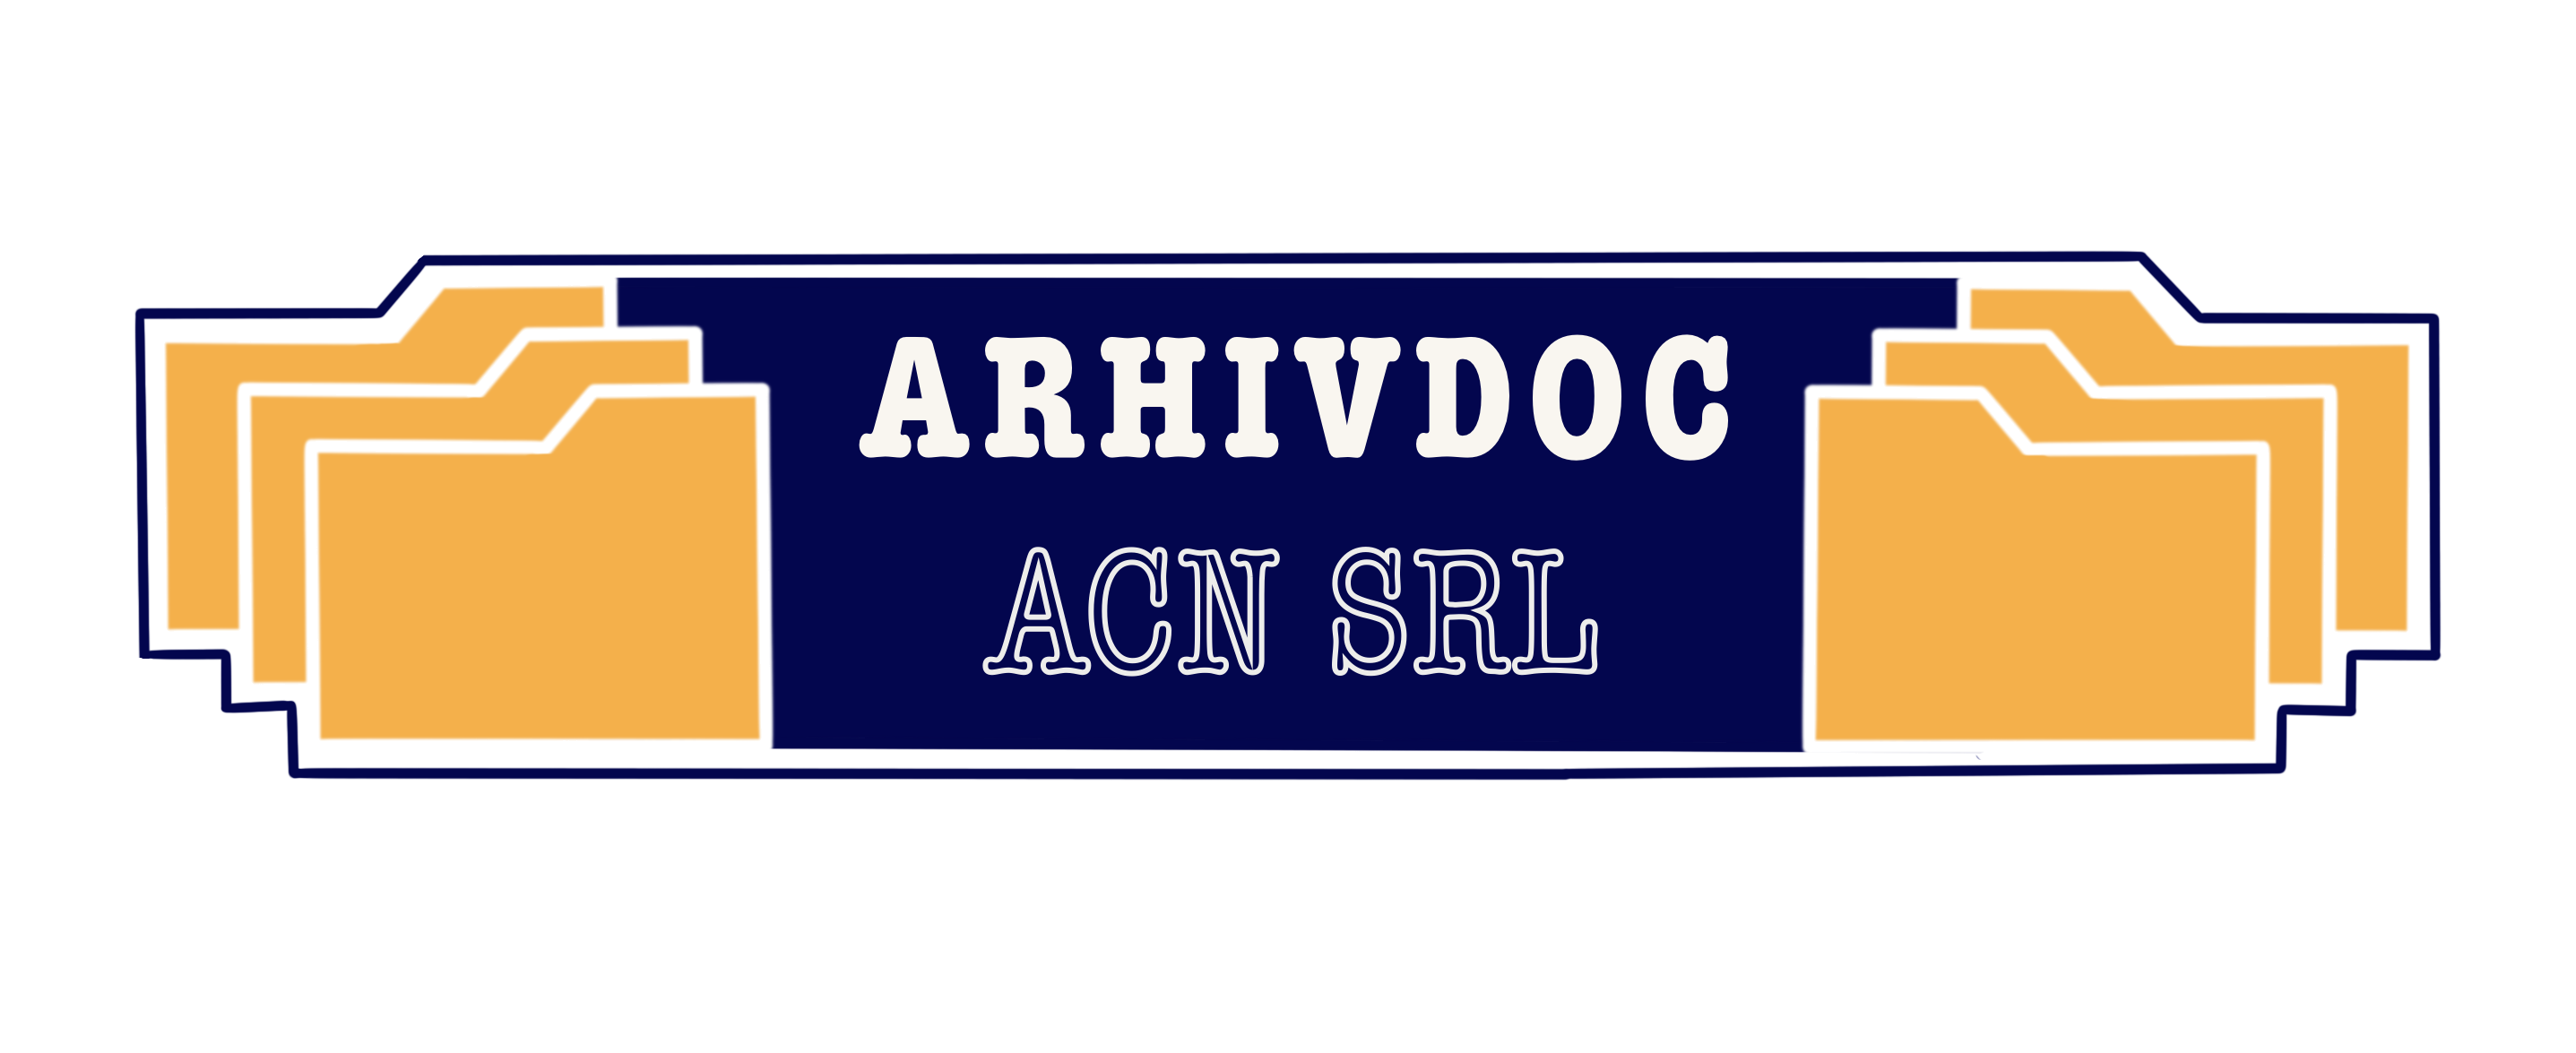 ARHIVDOC ACN SRL